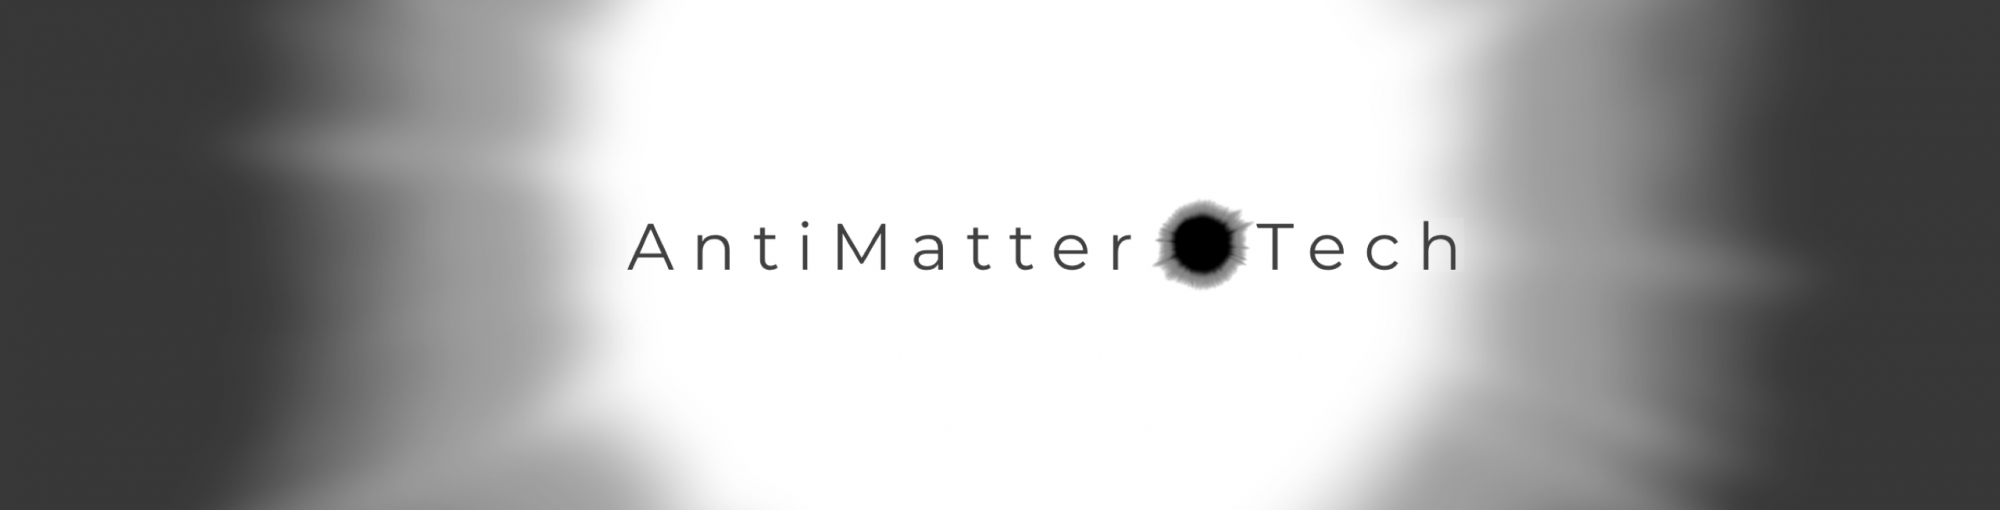 AntiMatter OTech